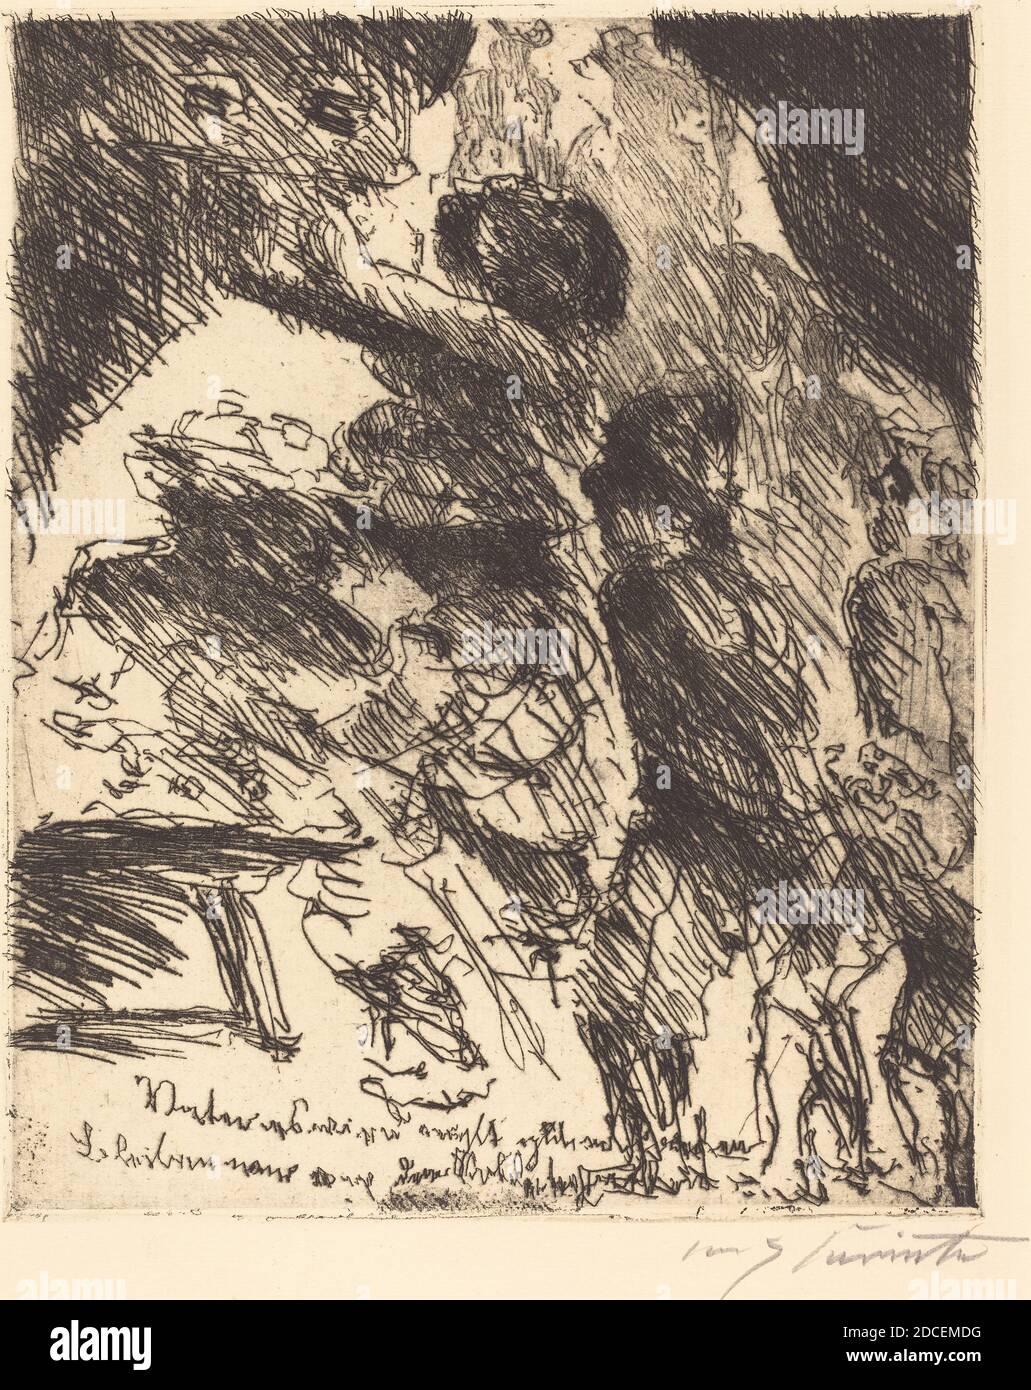 Lovis Corinth, (artist), German, 1858 - 1925, 'Vater, es wird nicht gut ablaufen, bleiben wir von dem soldatenhaufen' ('Father, This Won't Turn Out Well, We should stay away from the gang of soldiers'), Wallensteins Lager (Wallenstein's Camp), (series), 1923, etching in black on laid paper, plate: 25.8 x 20.8 cm (10 3/16 x 8 3/16 in.), sheet: 38.7 x 29.2 cm (15 1/4 x 11 1/2 in Stock Photo